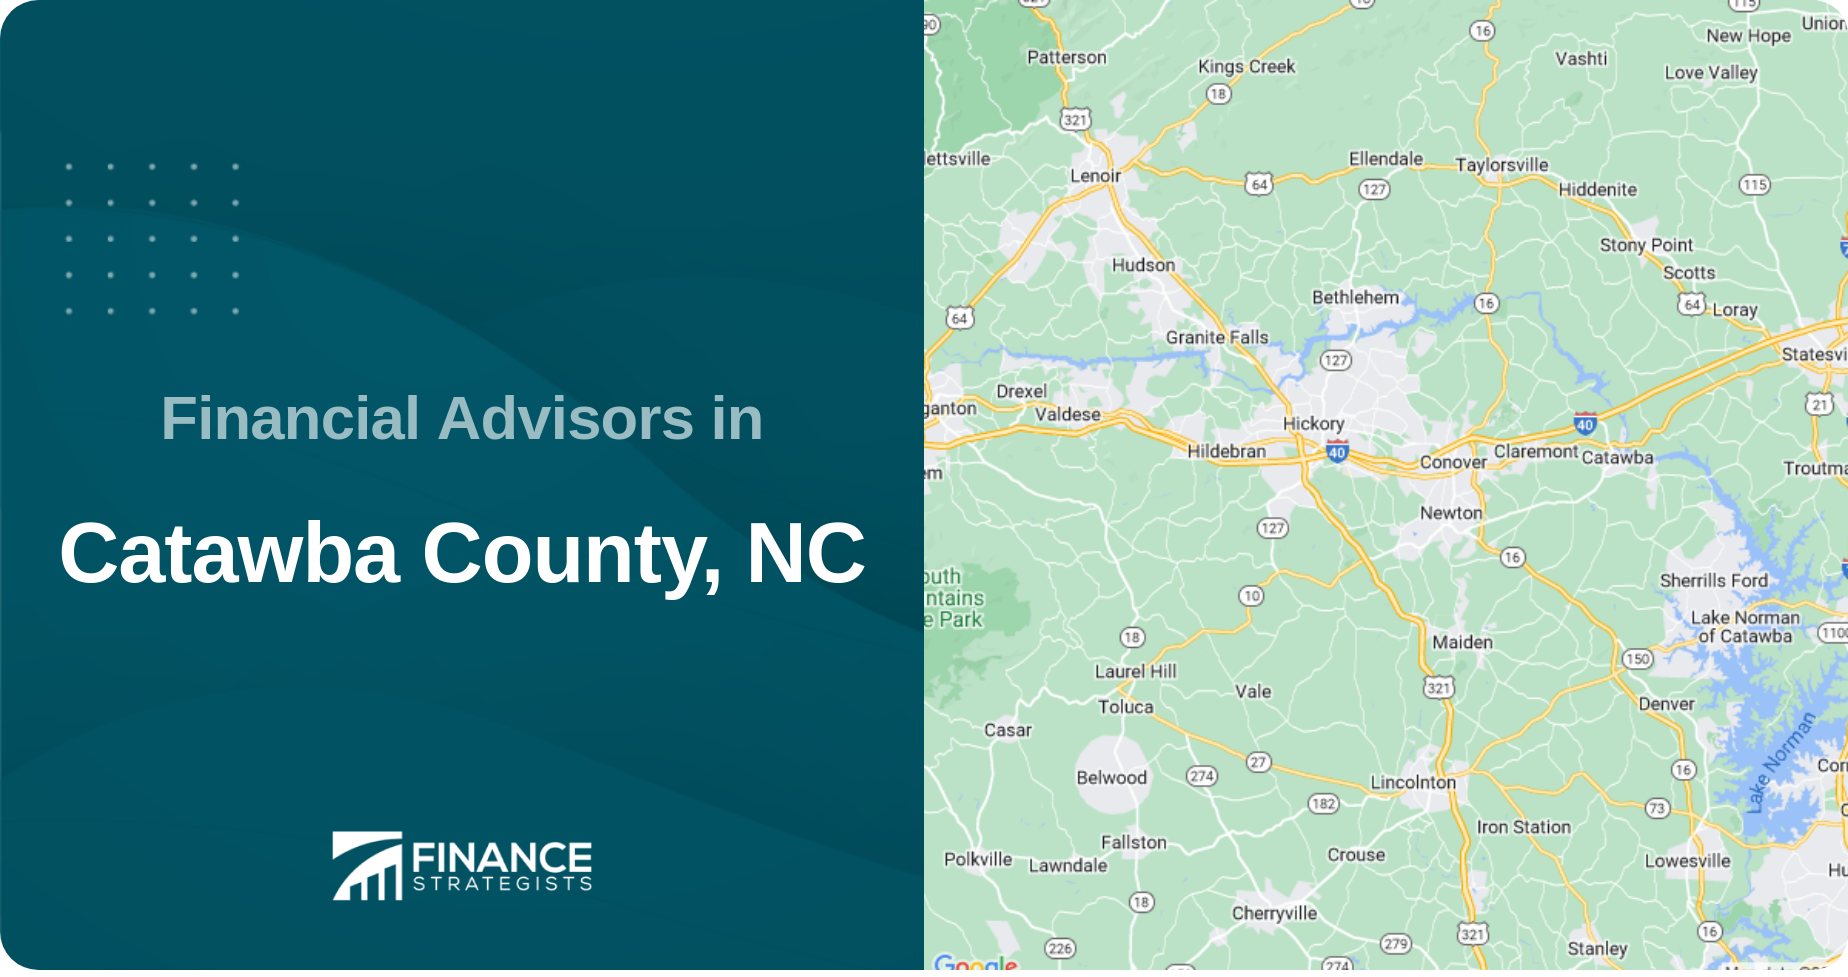 Financial Advisors in Catawba County, NC